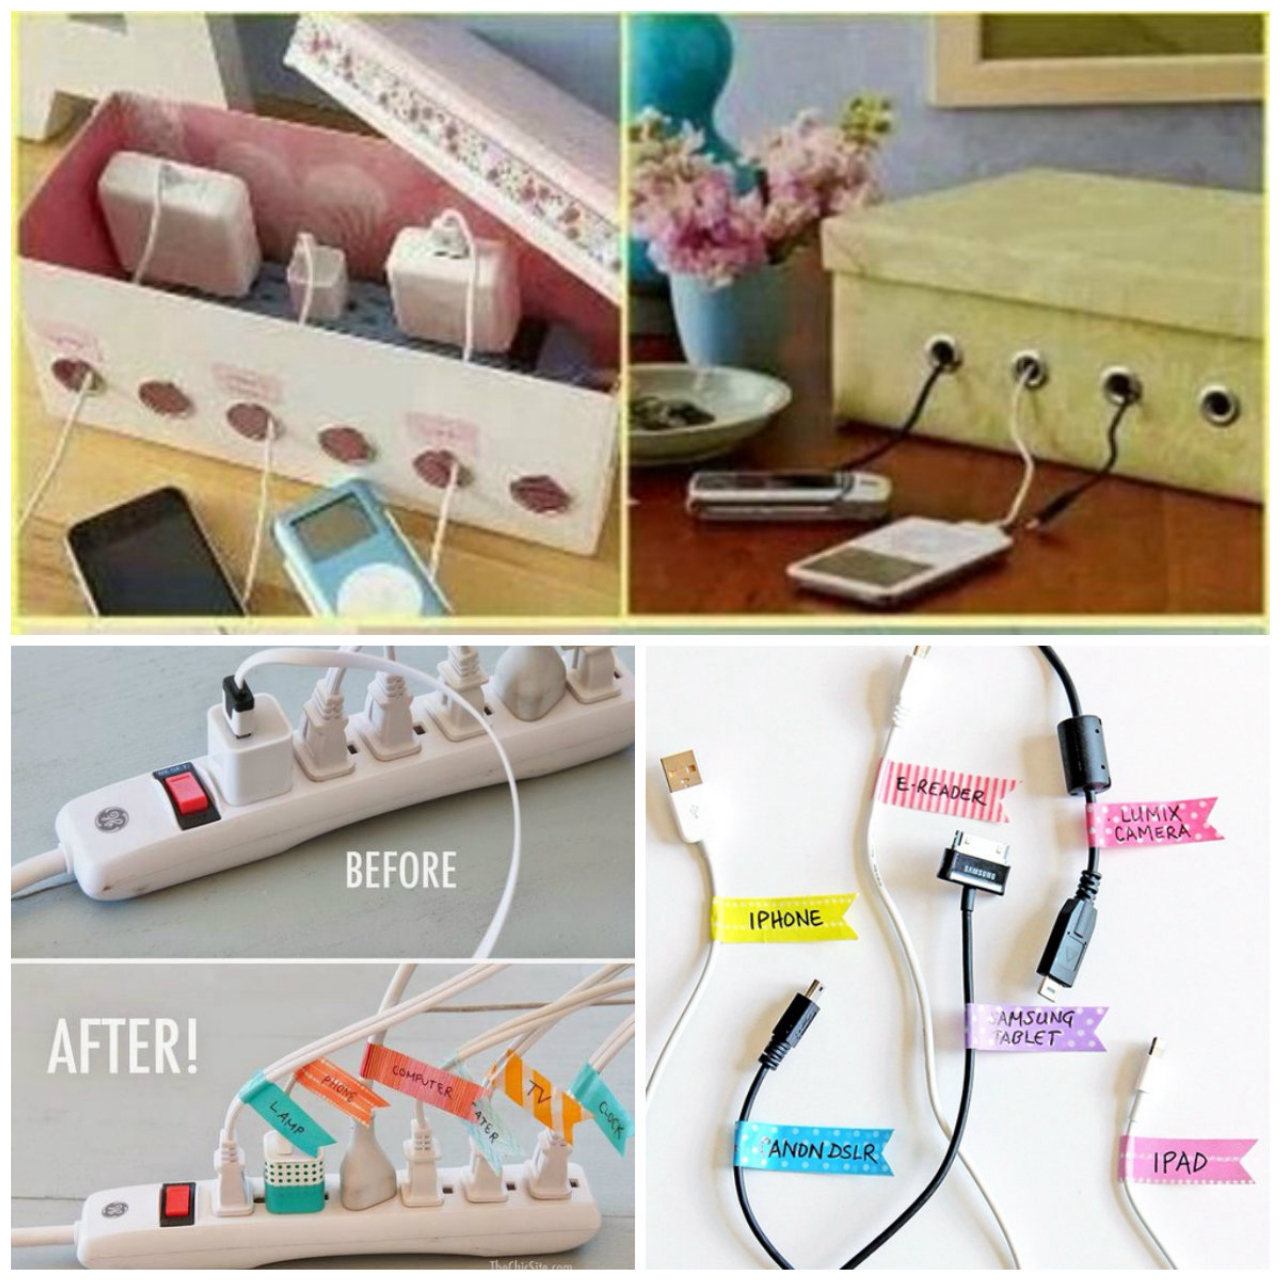 Caixas com pequenos orifícios para passagem dos fios e etiquetas coloridas para identificar cada cabo.<br>Fotos: Reprodução Pinterest  